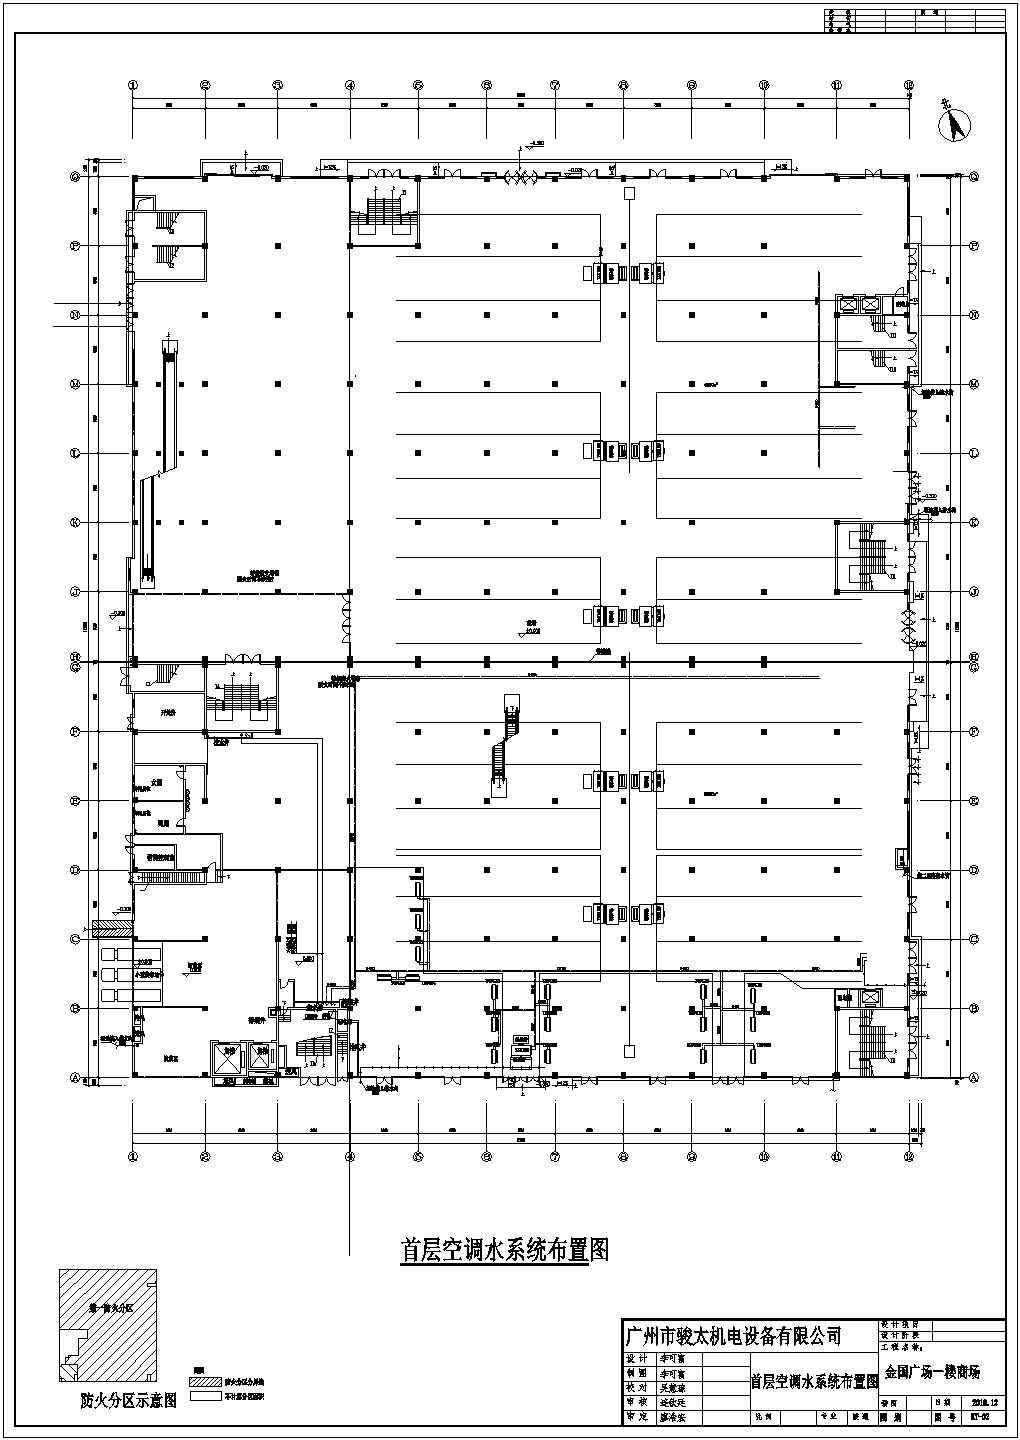 广州金国广场一楼商场风机盘管系统空调设计图